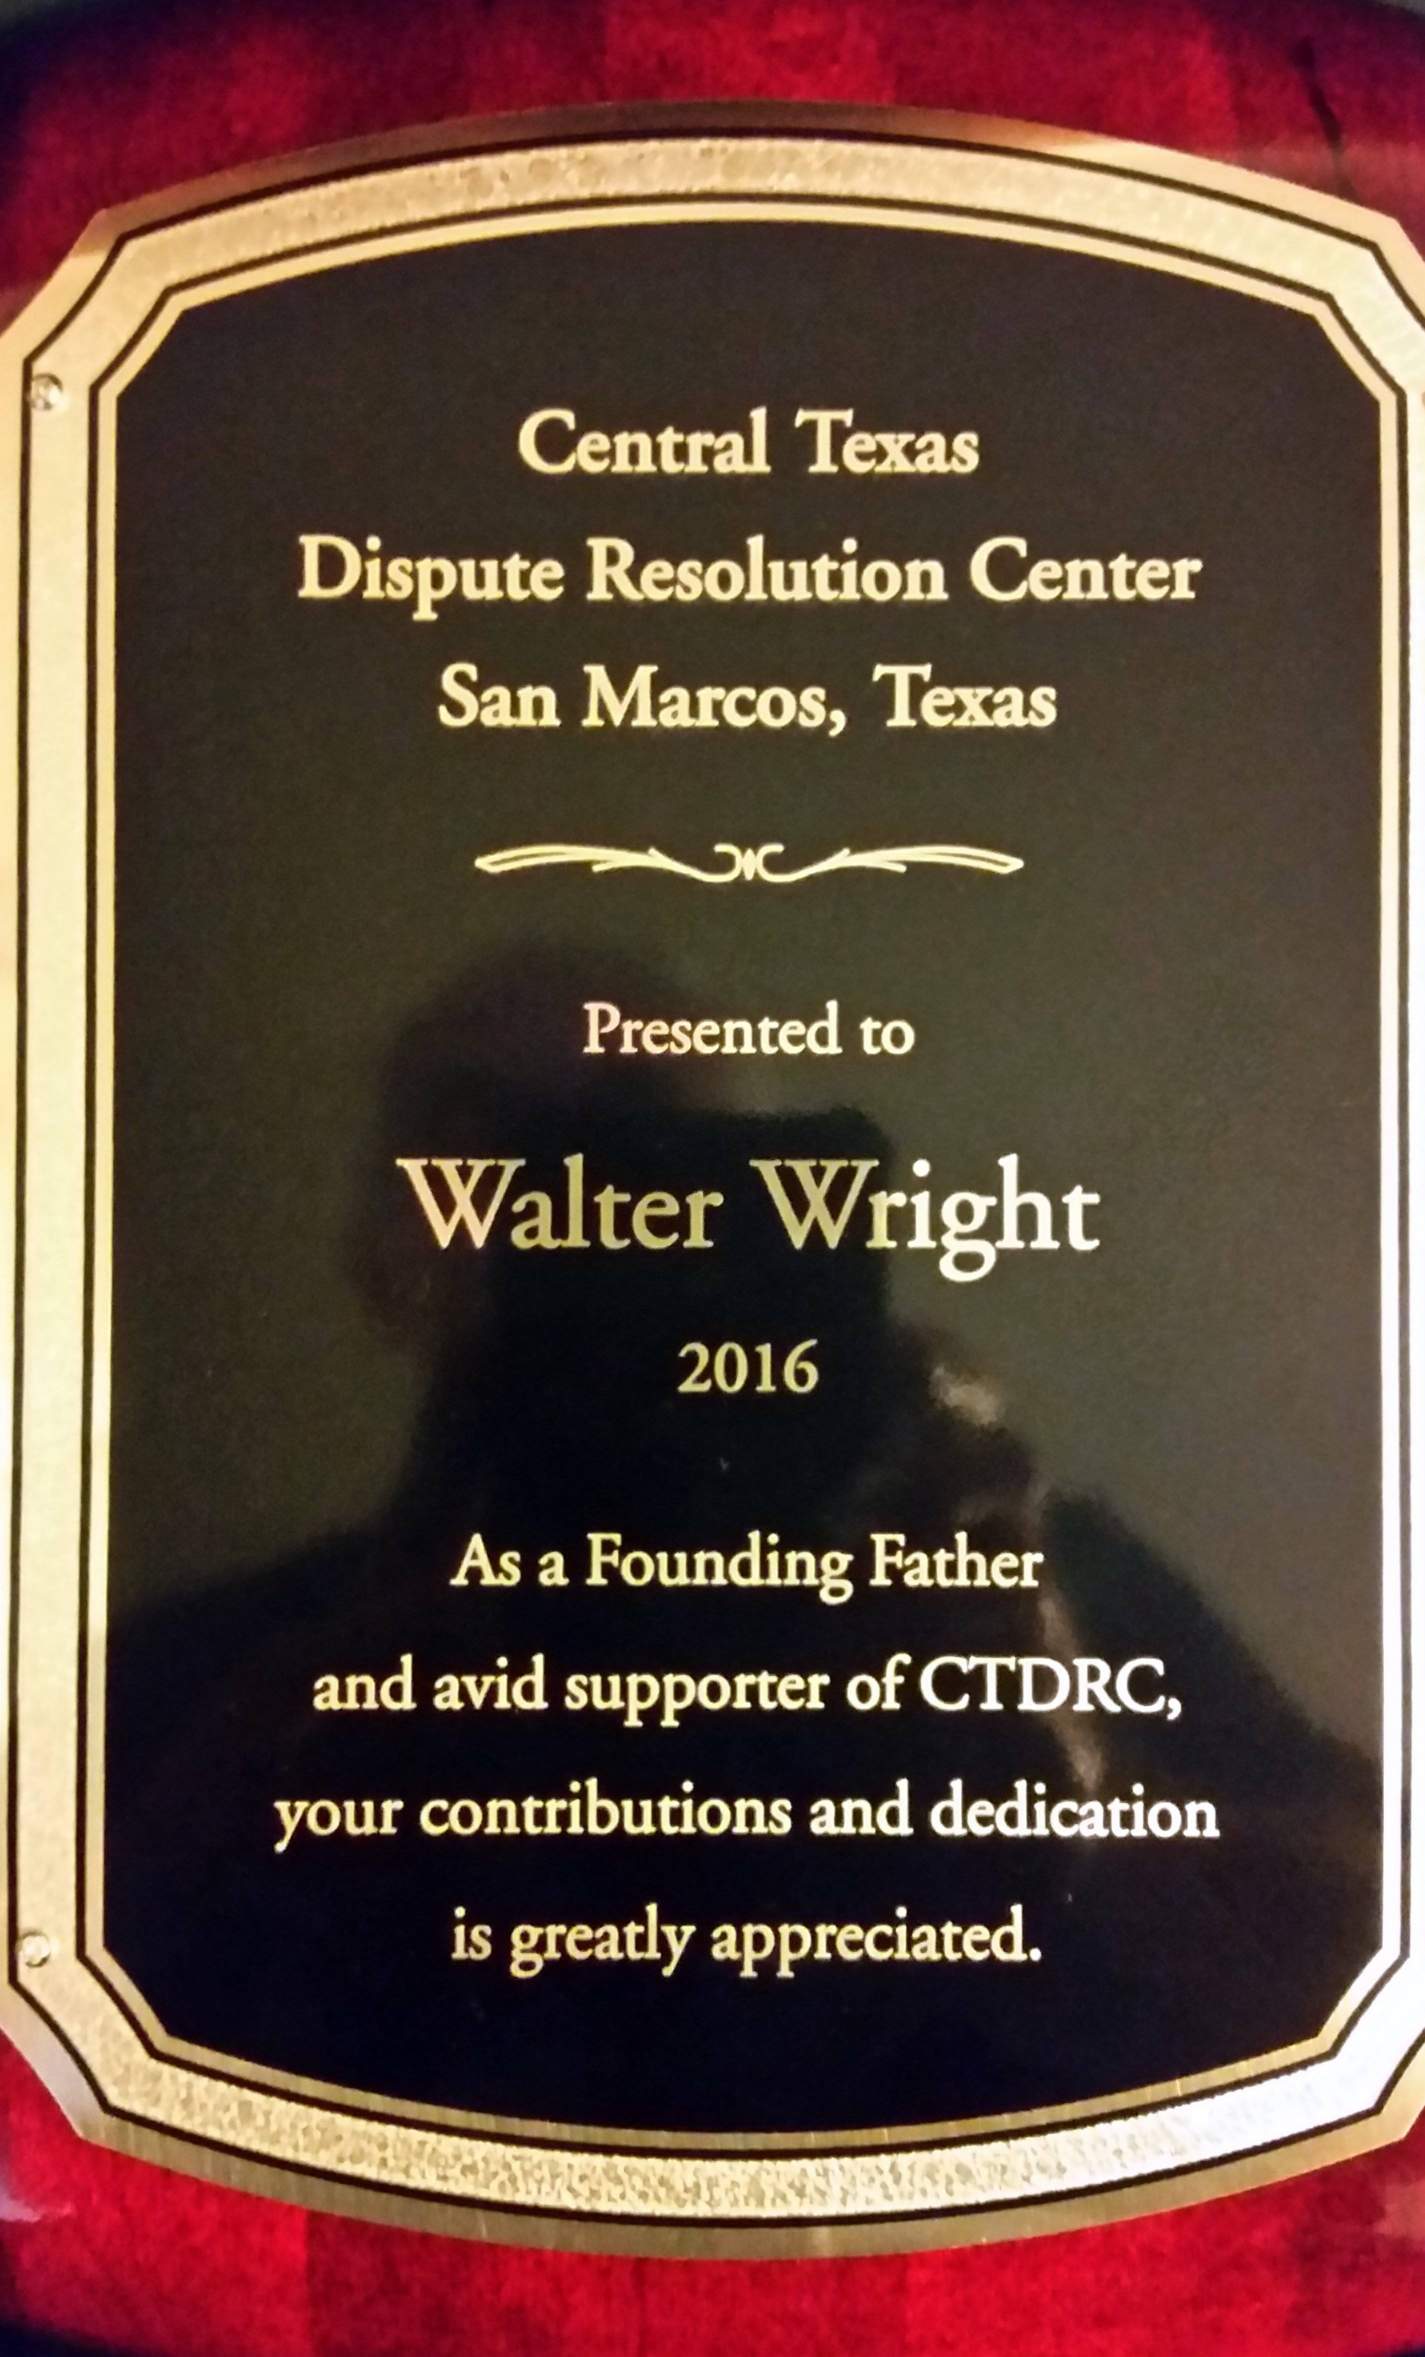 Dr. Walter Wright's Award